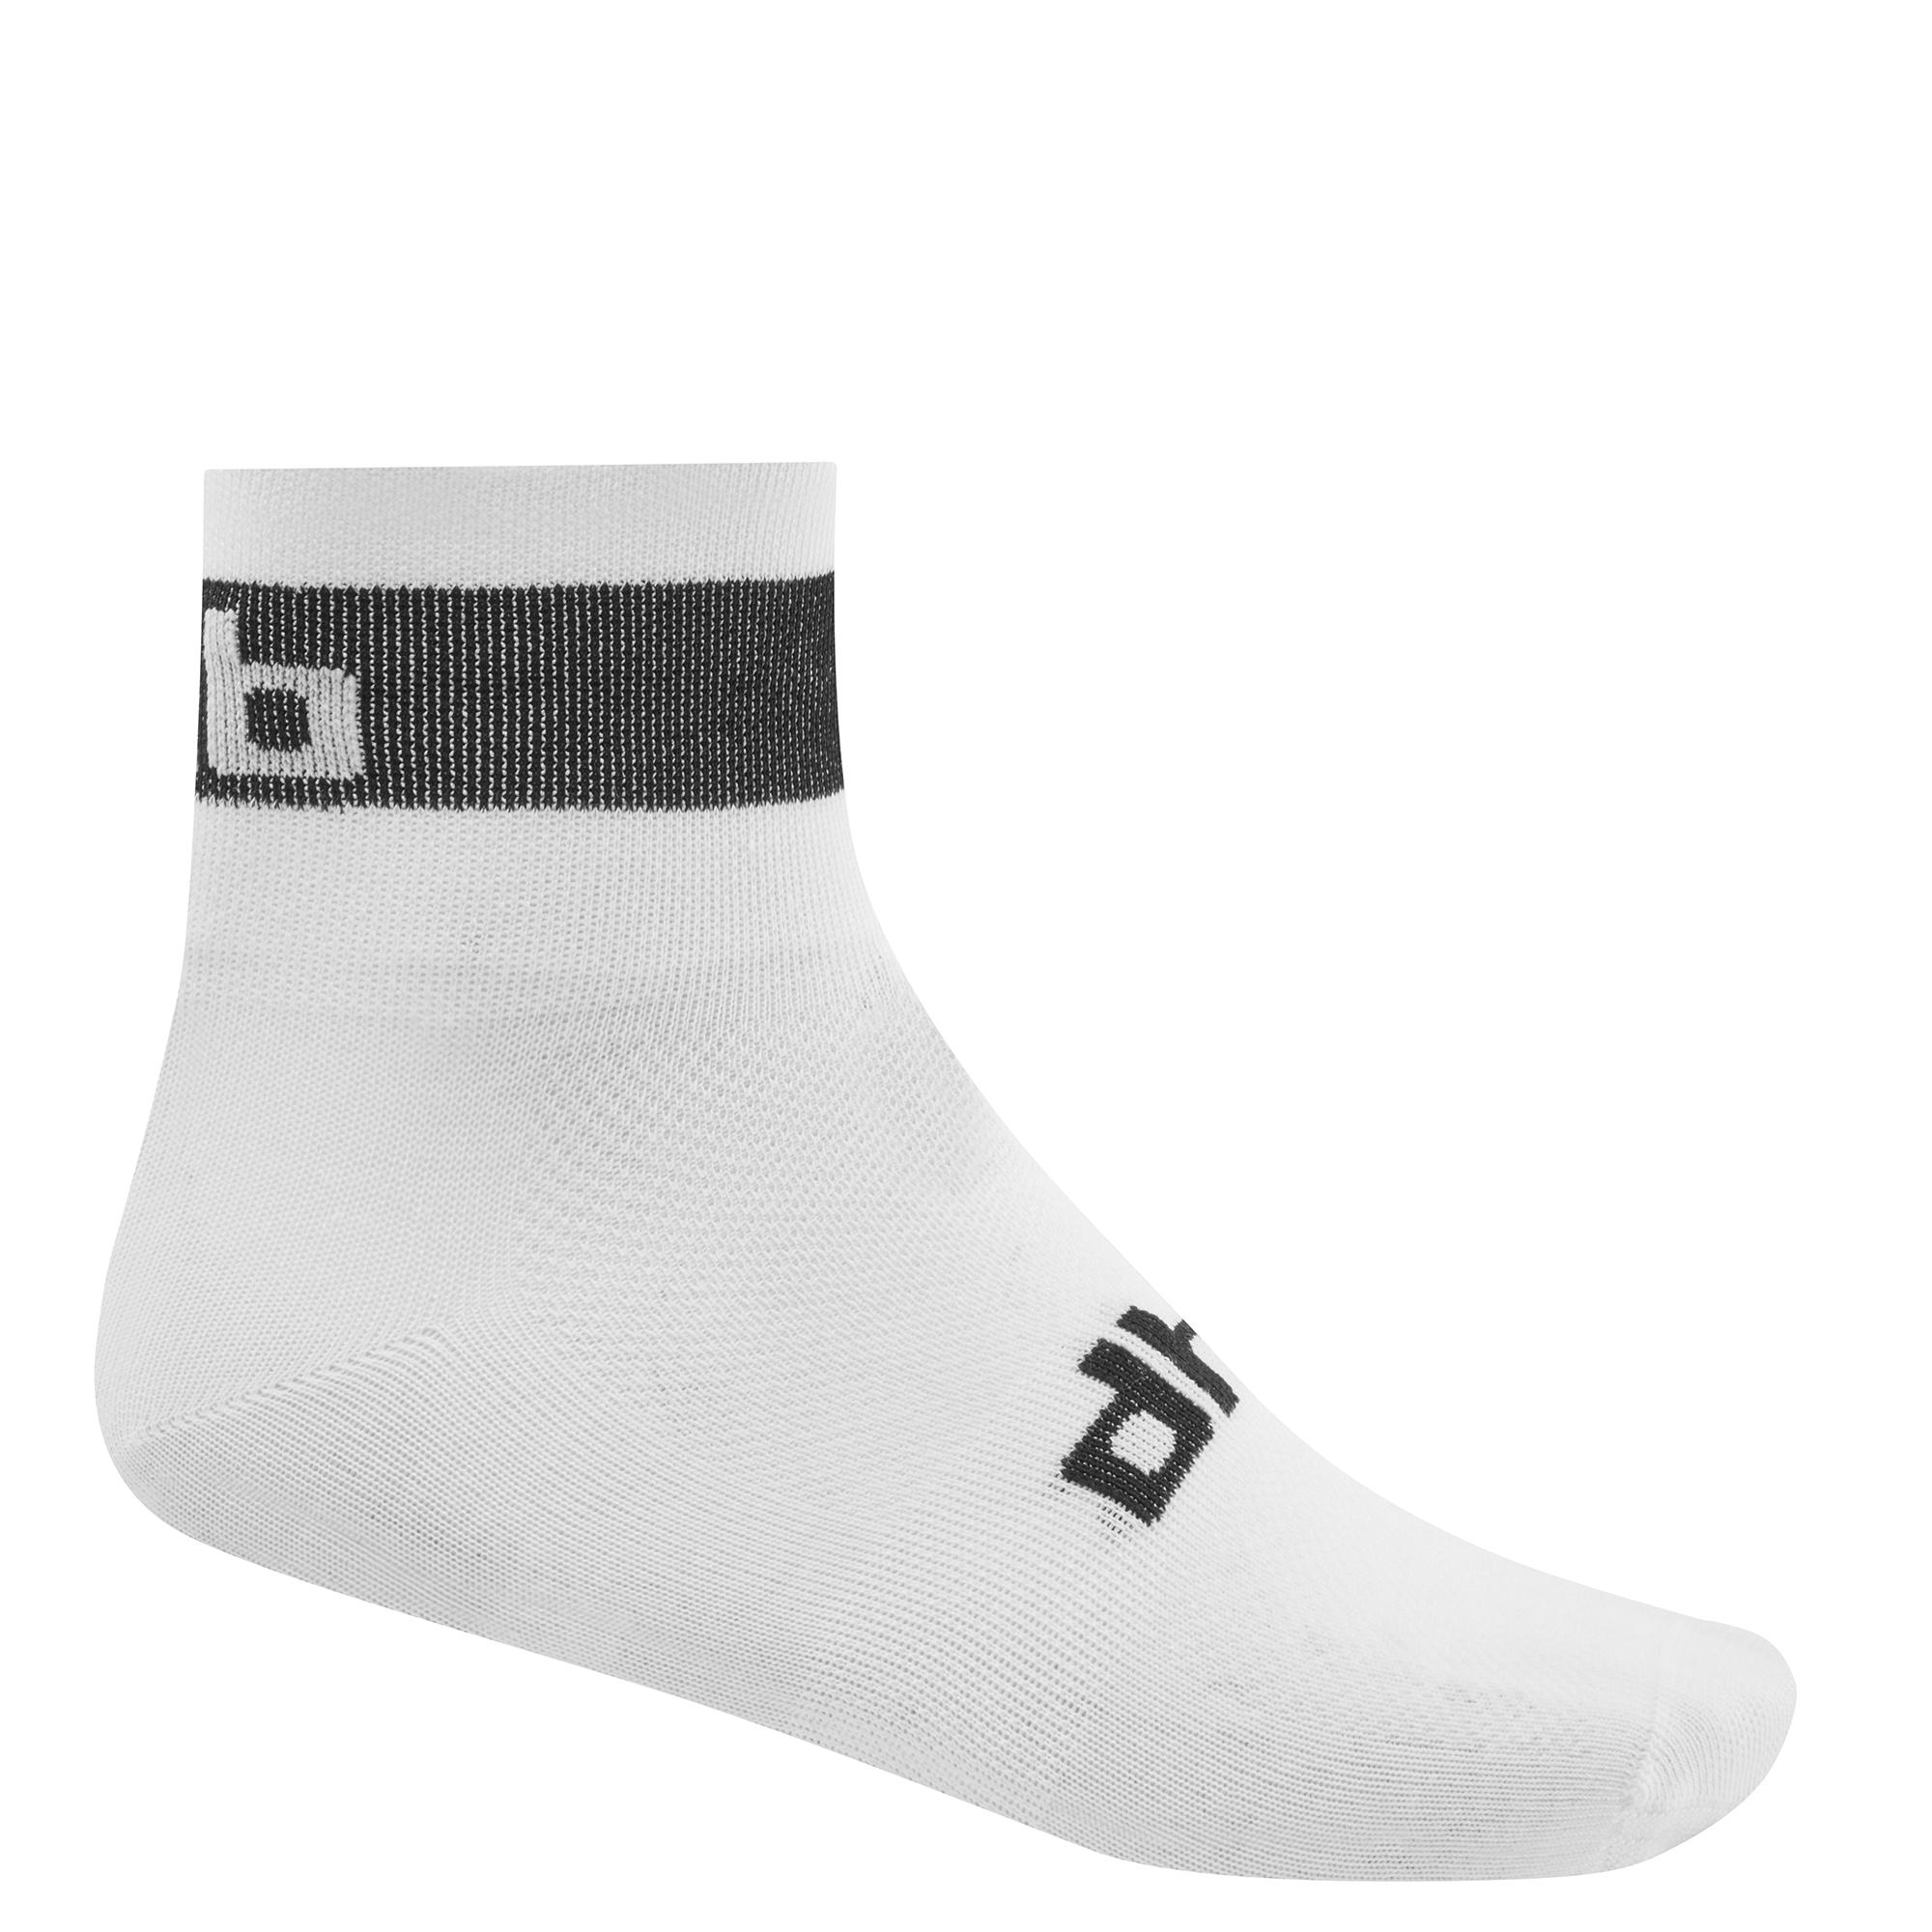 Dhb Sock - White/black